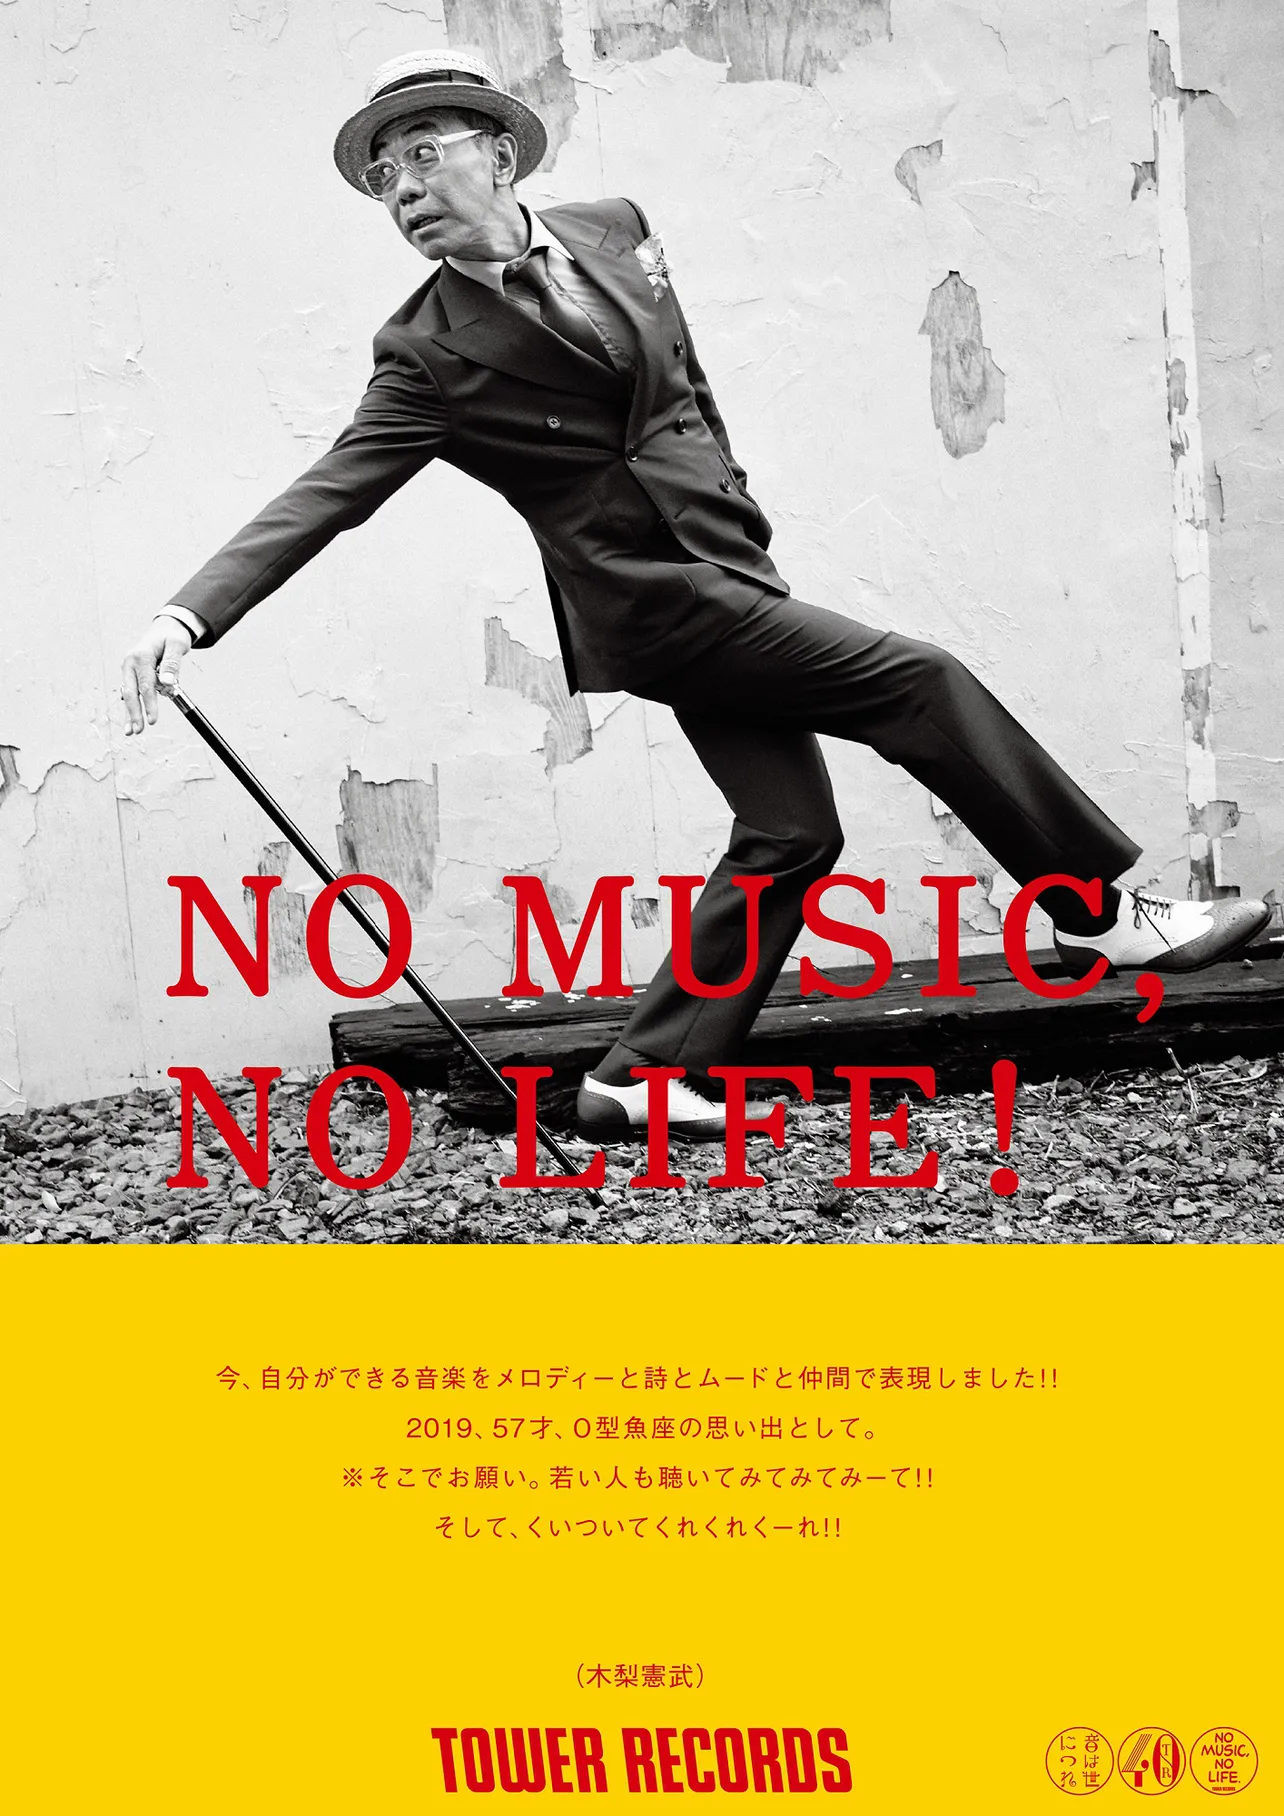 タワーレコードの「NO MUSIC, NO LIFE」ポスターに初登場した木梨憲武